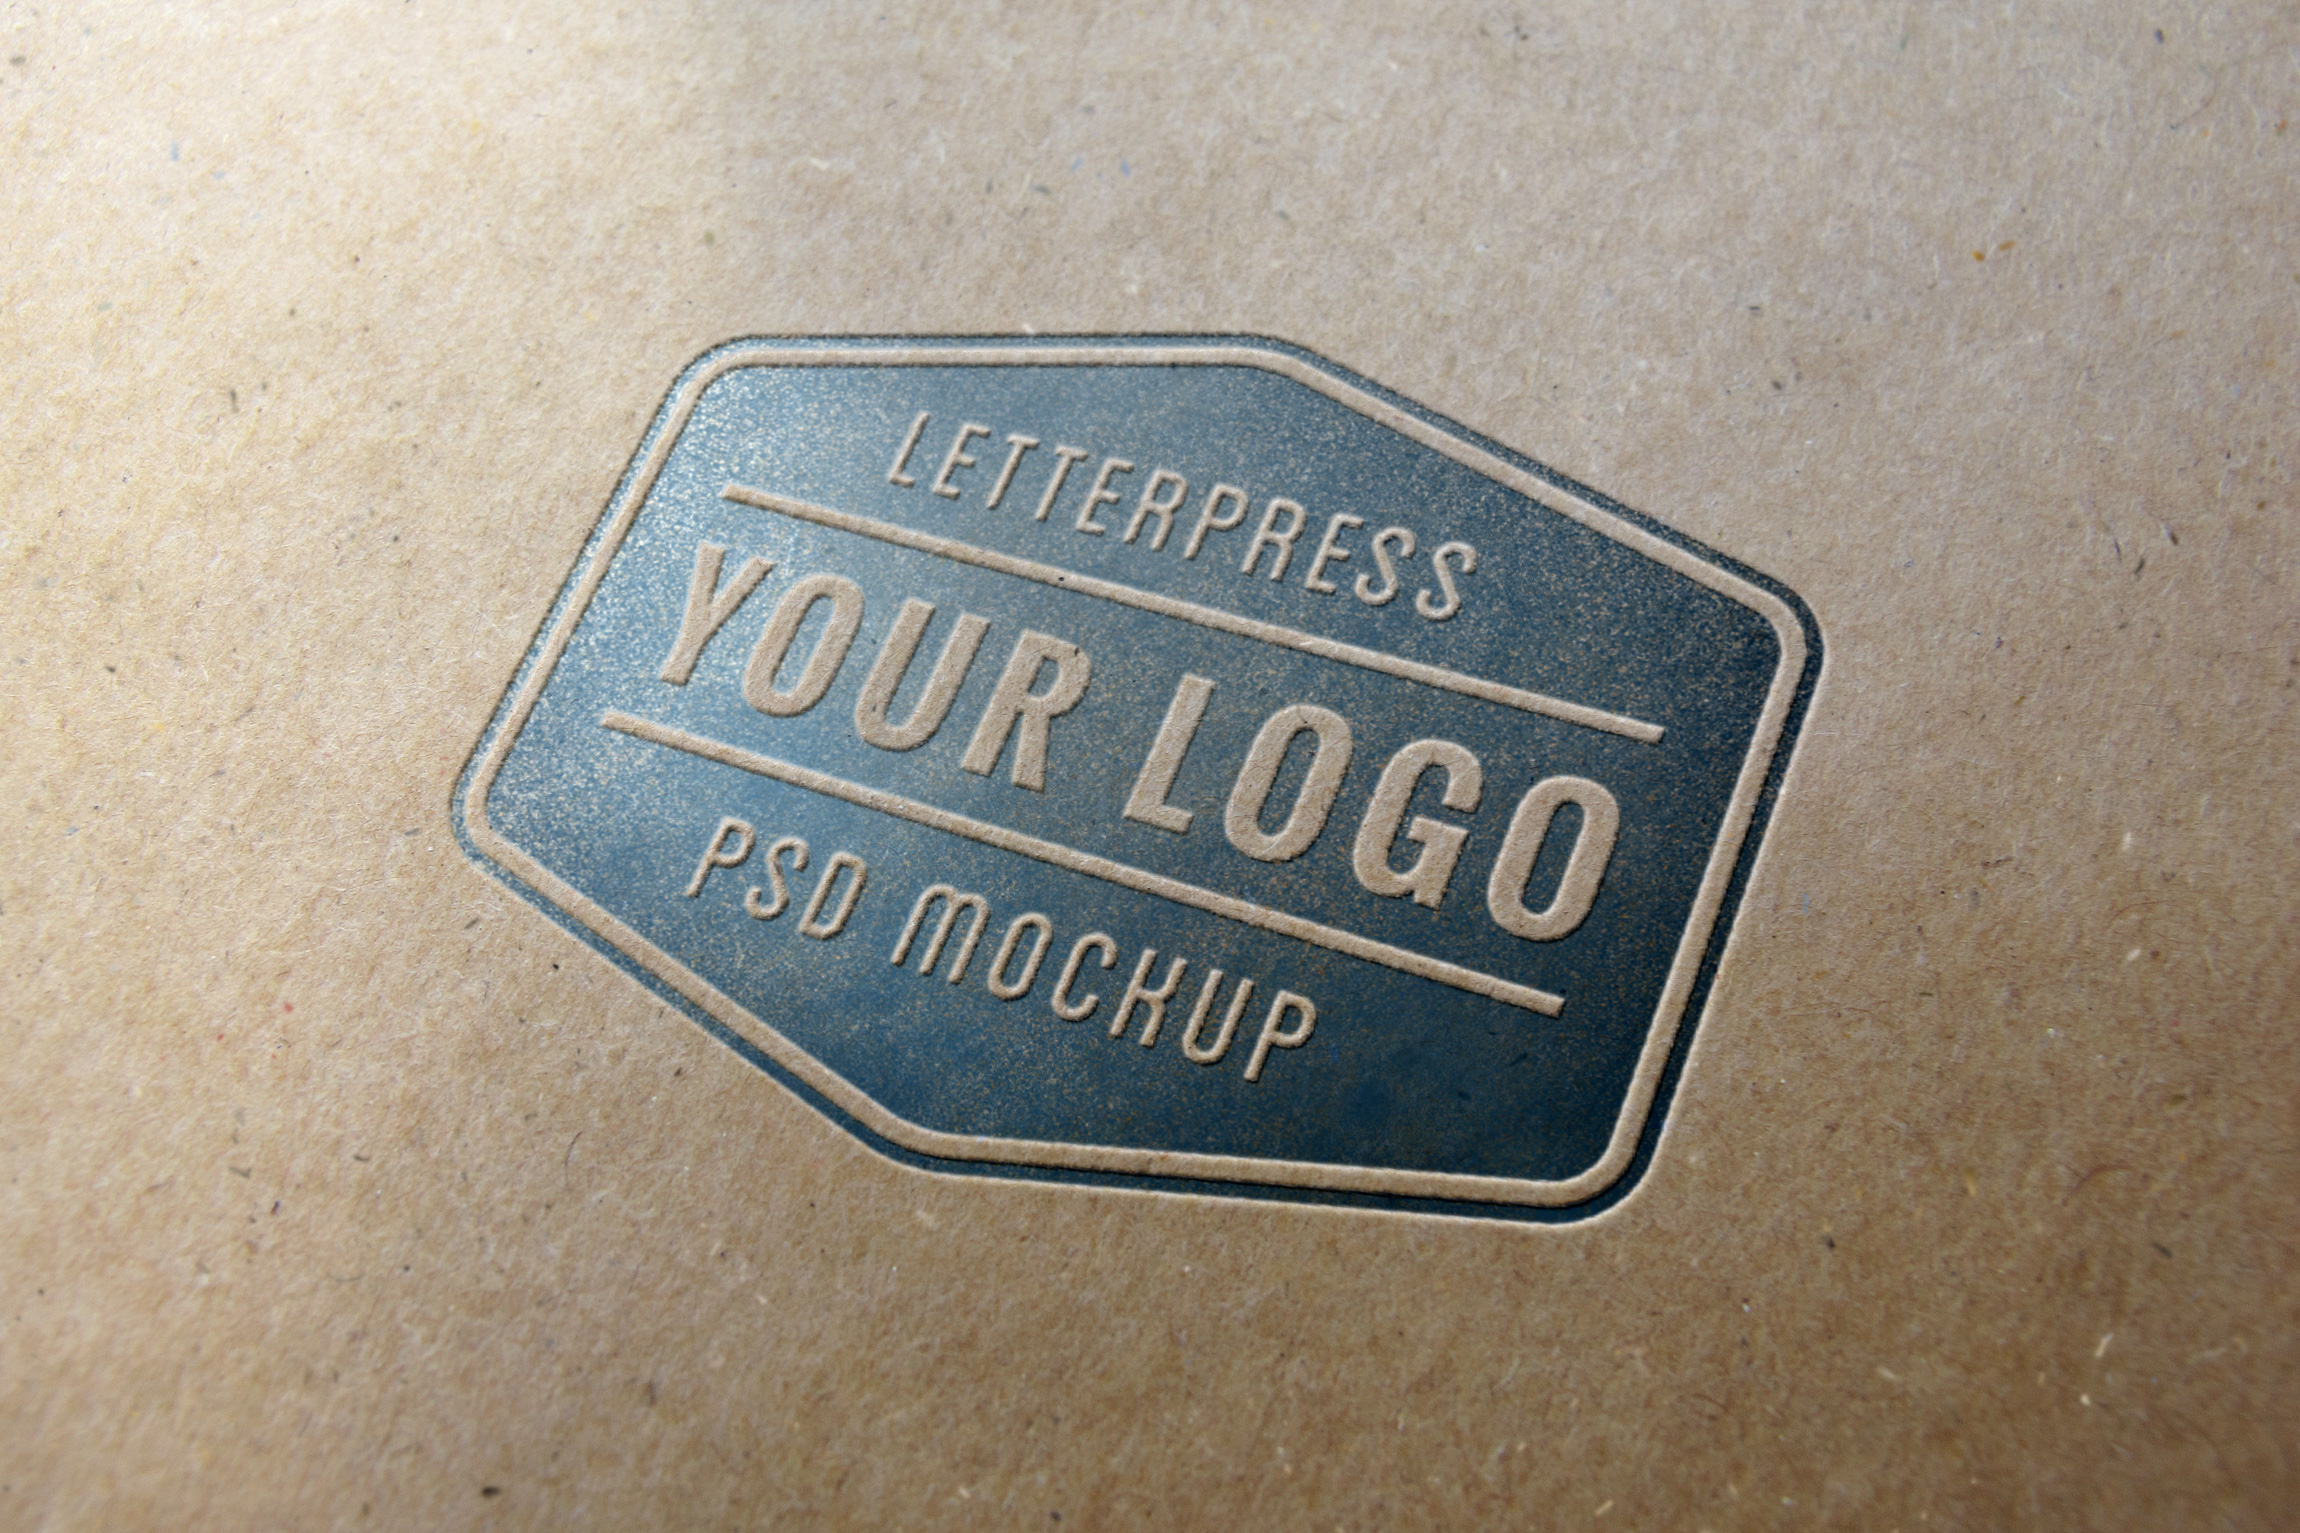 Download Letterpress Logo MockUp #1 | GraphicBurger